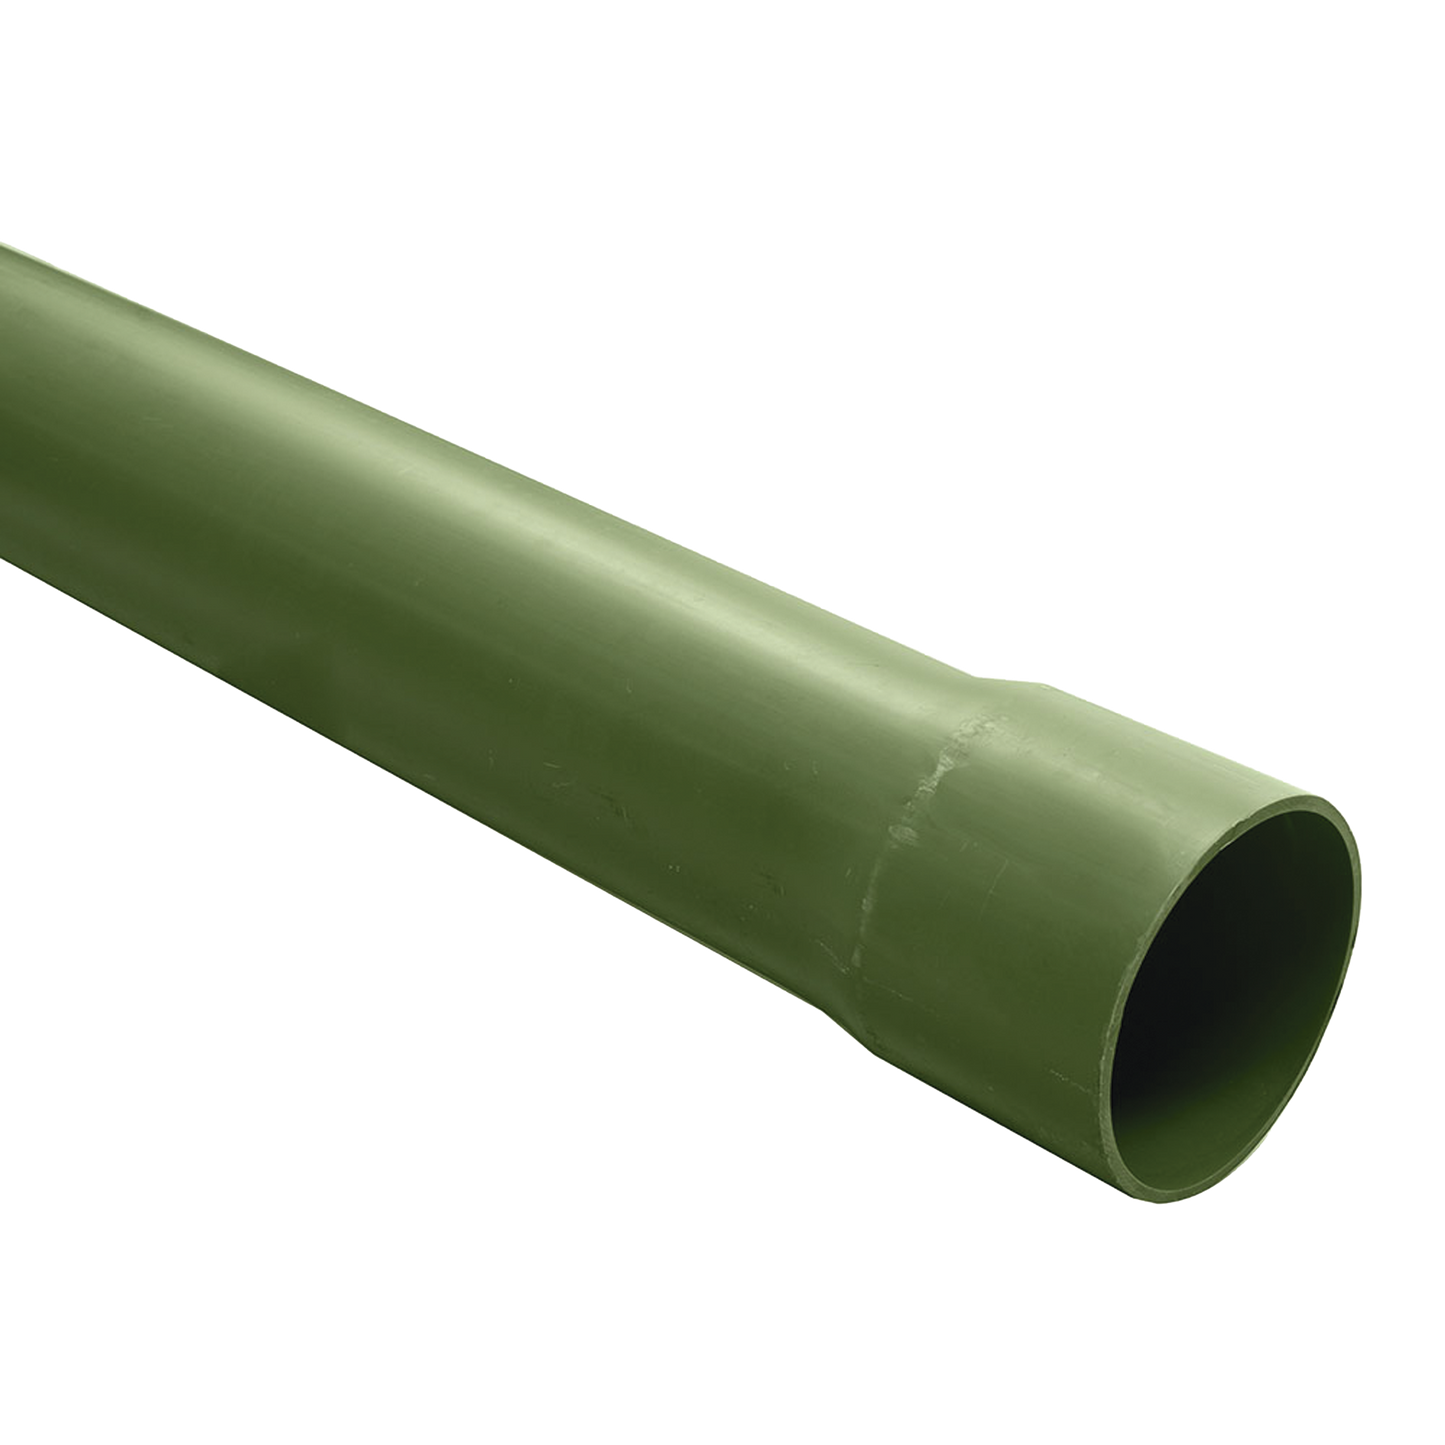 Tubo PVC Conduit pesado de 3/4" (19mm) de 3 m.